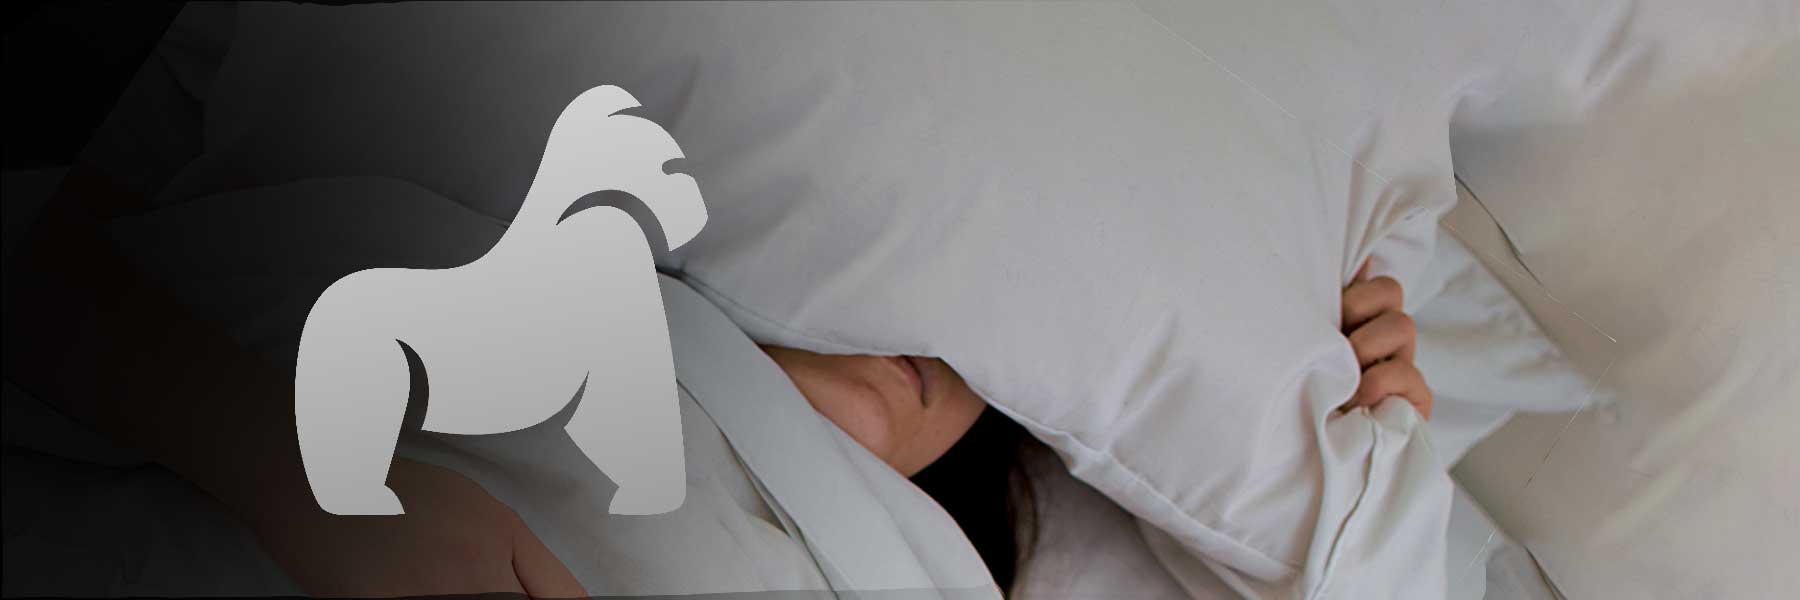 Gesunder Schlaf: Tipps gegen Schnarchen für eine erholsame Nacht